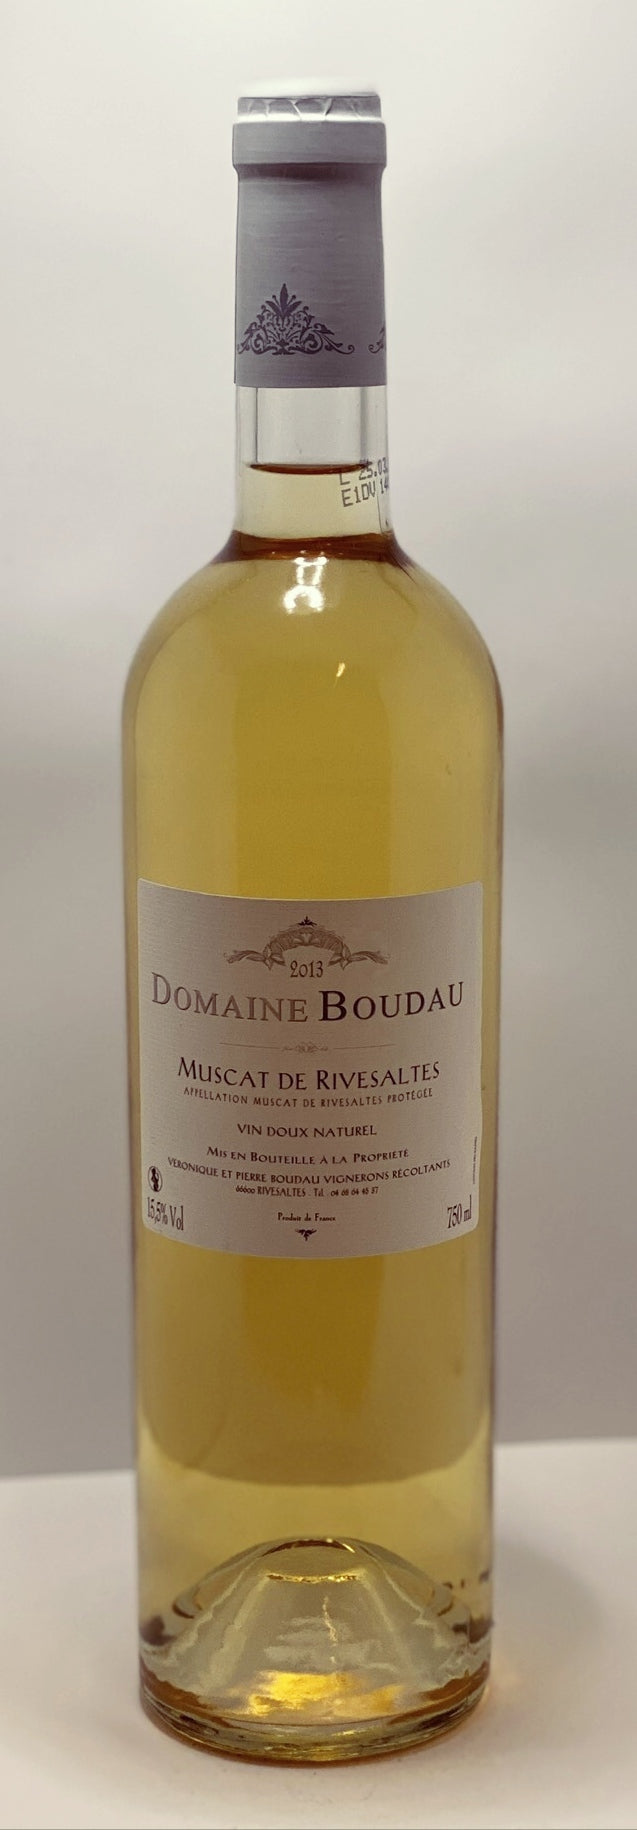 2013 Domaine Boudau Muscat de RivesaltesVin Doux Natural